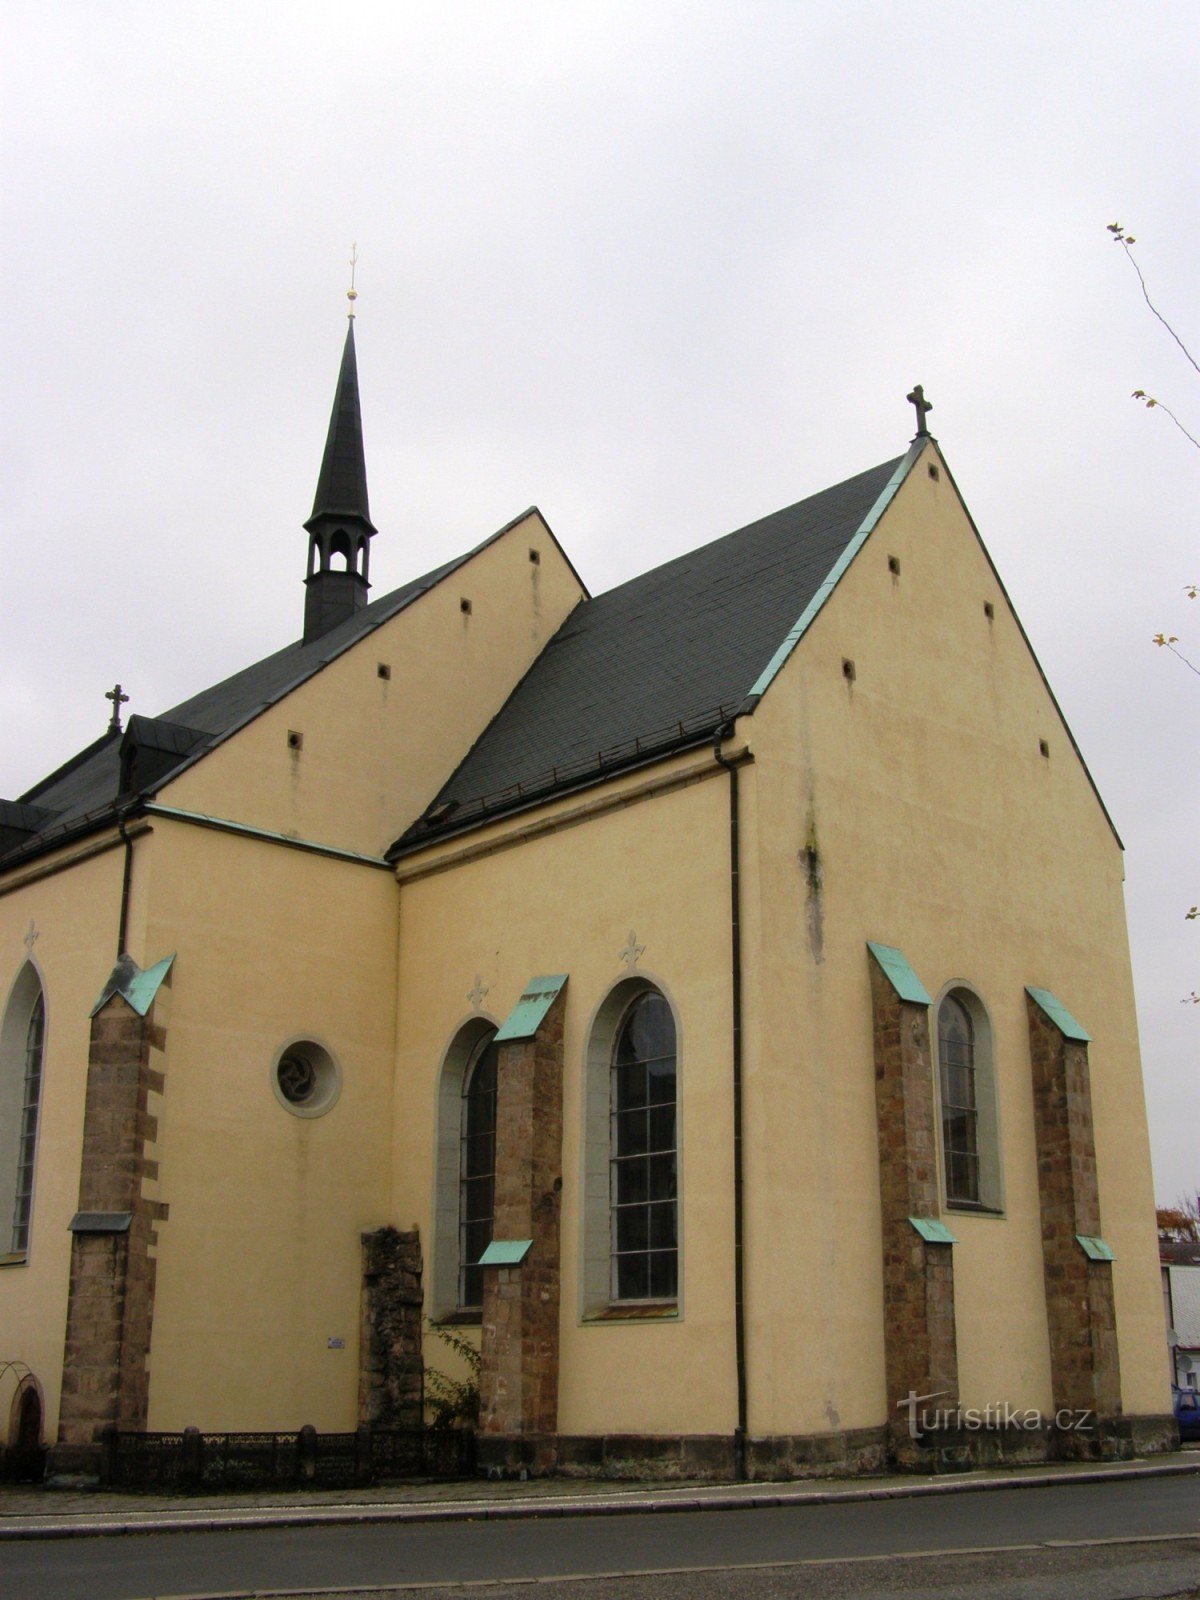 Dvur Králové - Εκκλησία του Αγ. Ιωάννης ο Βαπτιστής